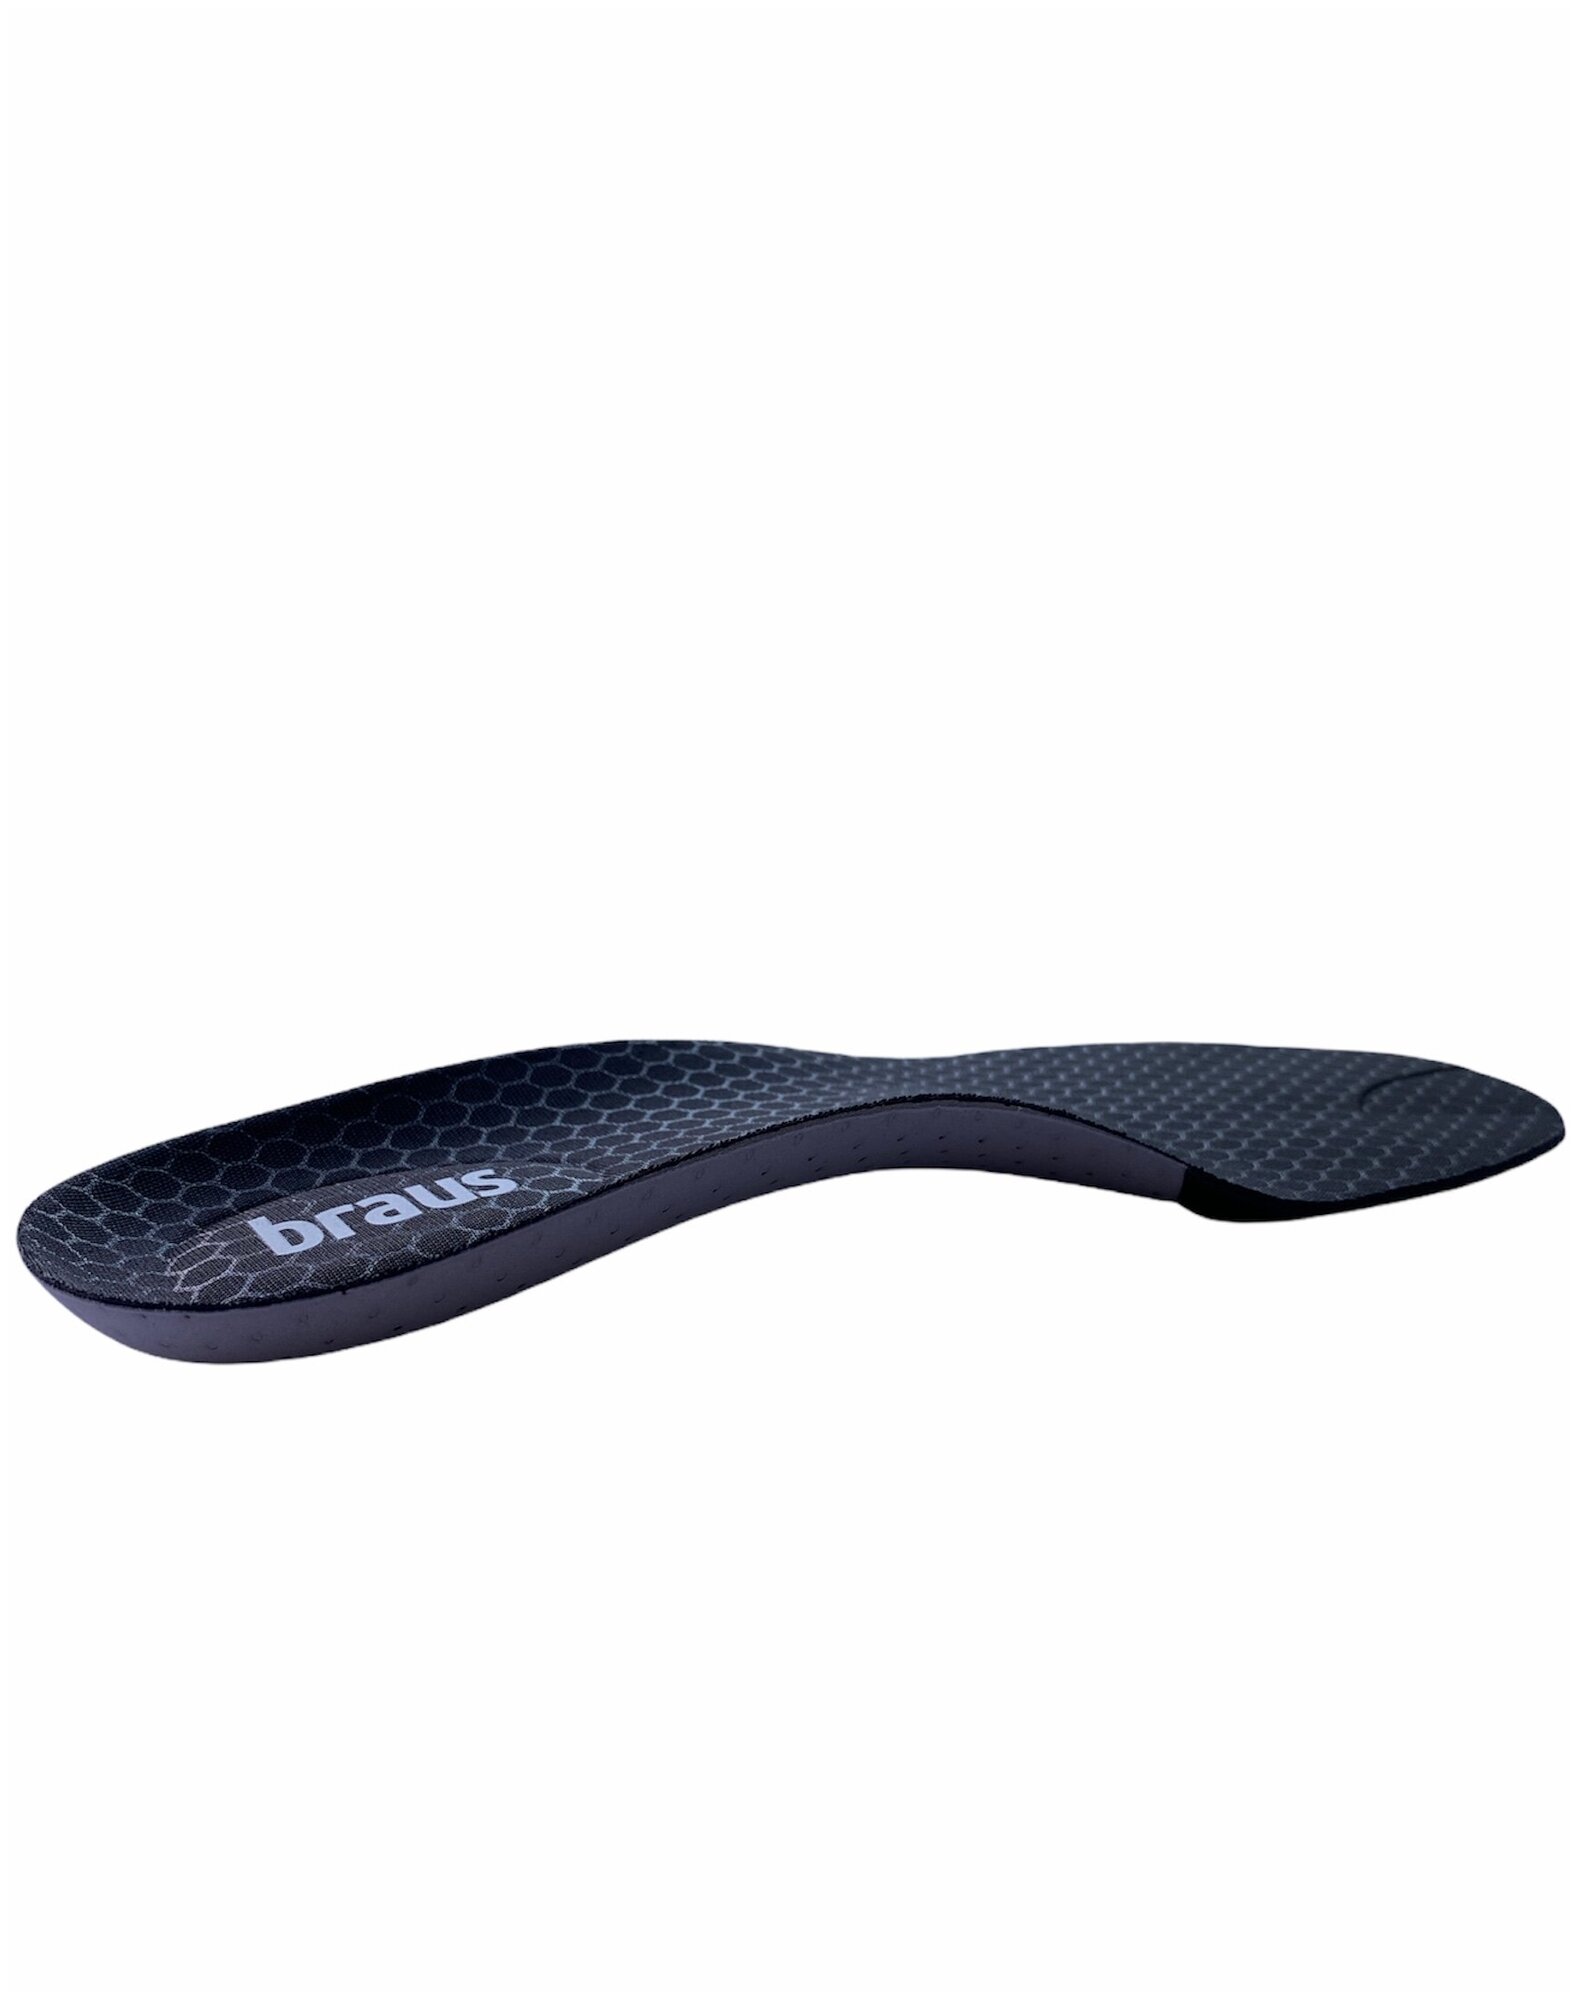 Стельки для спортивной и повседневной обуви Braus Carbon Sport. Размер 35/36